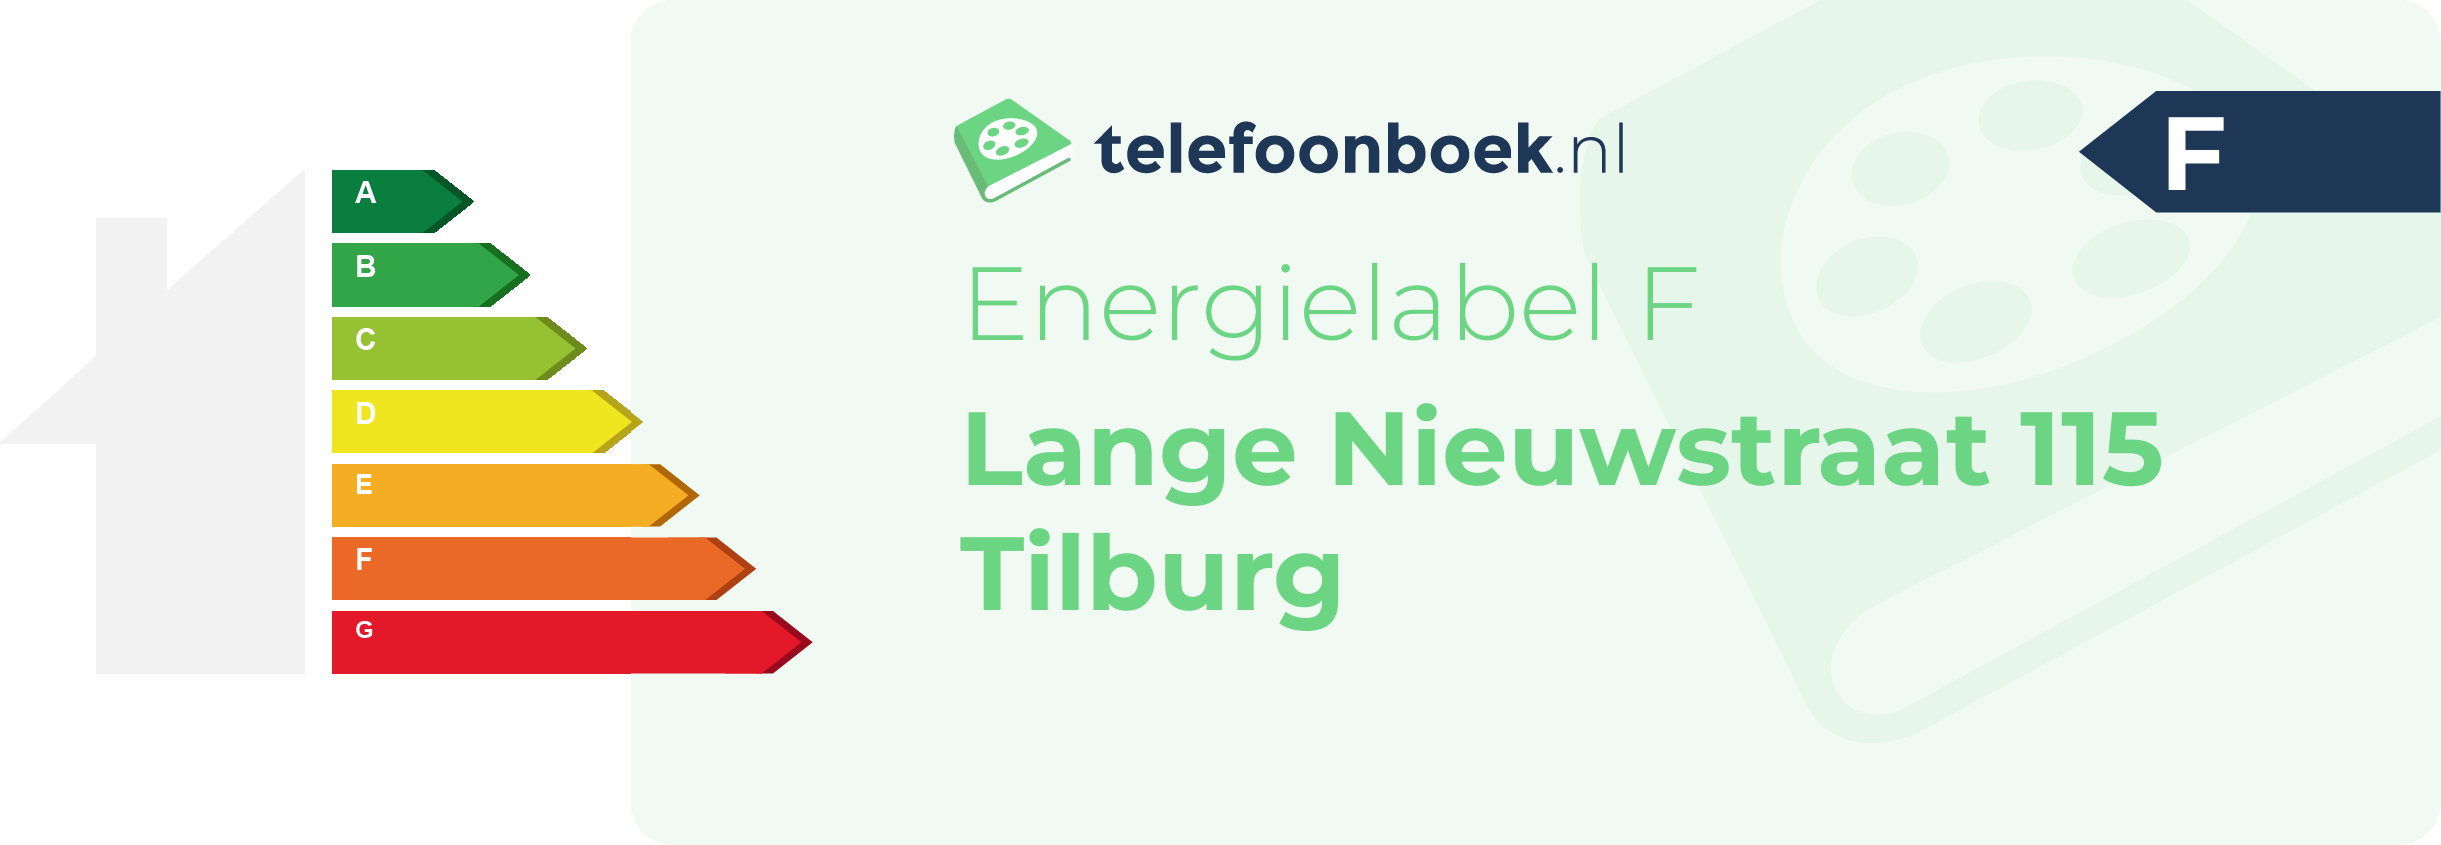 Energielabel Lange Nieuwstraat 115 Tilburg